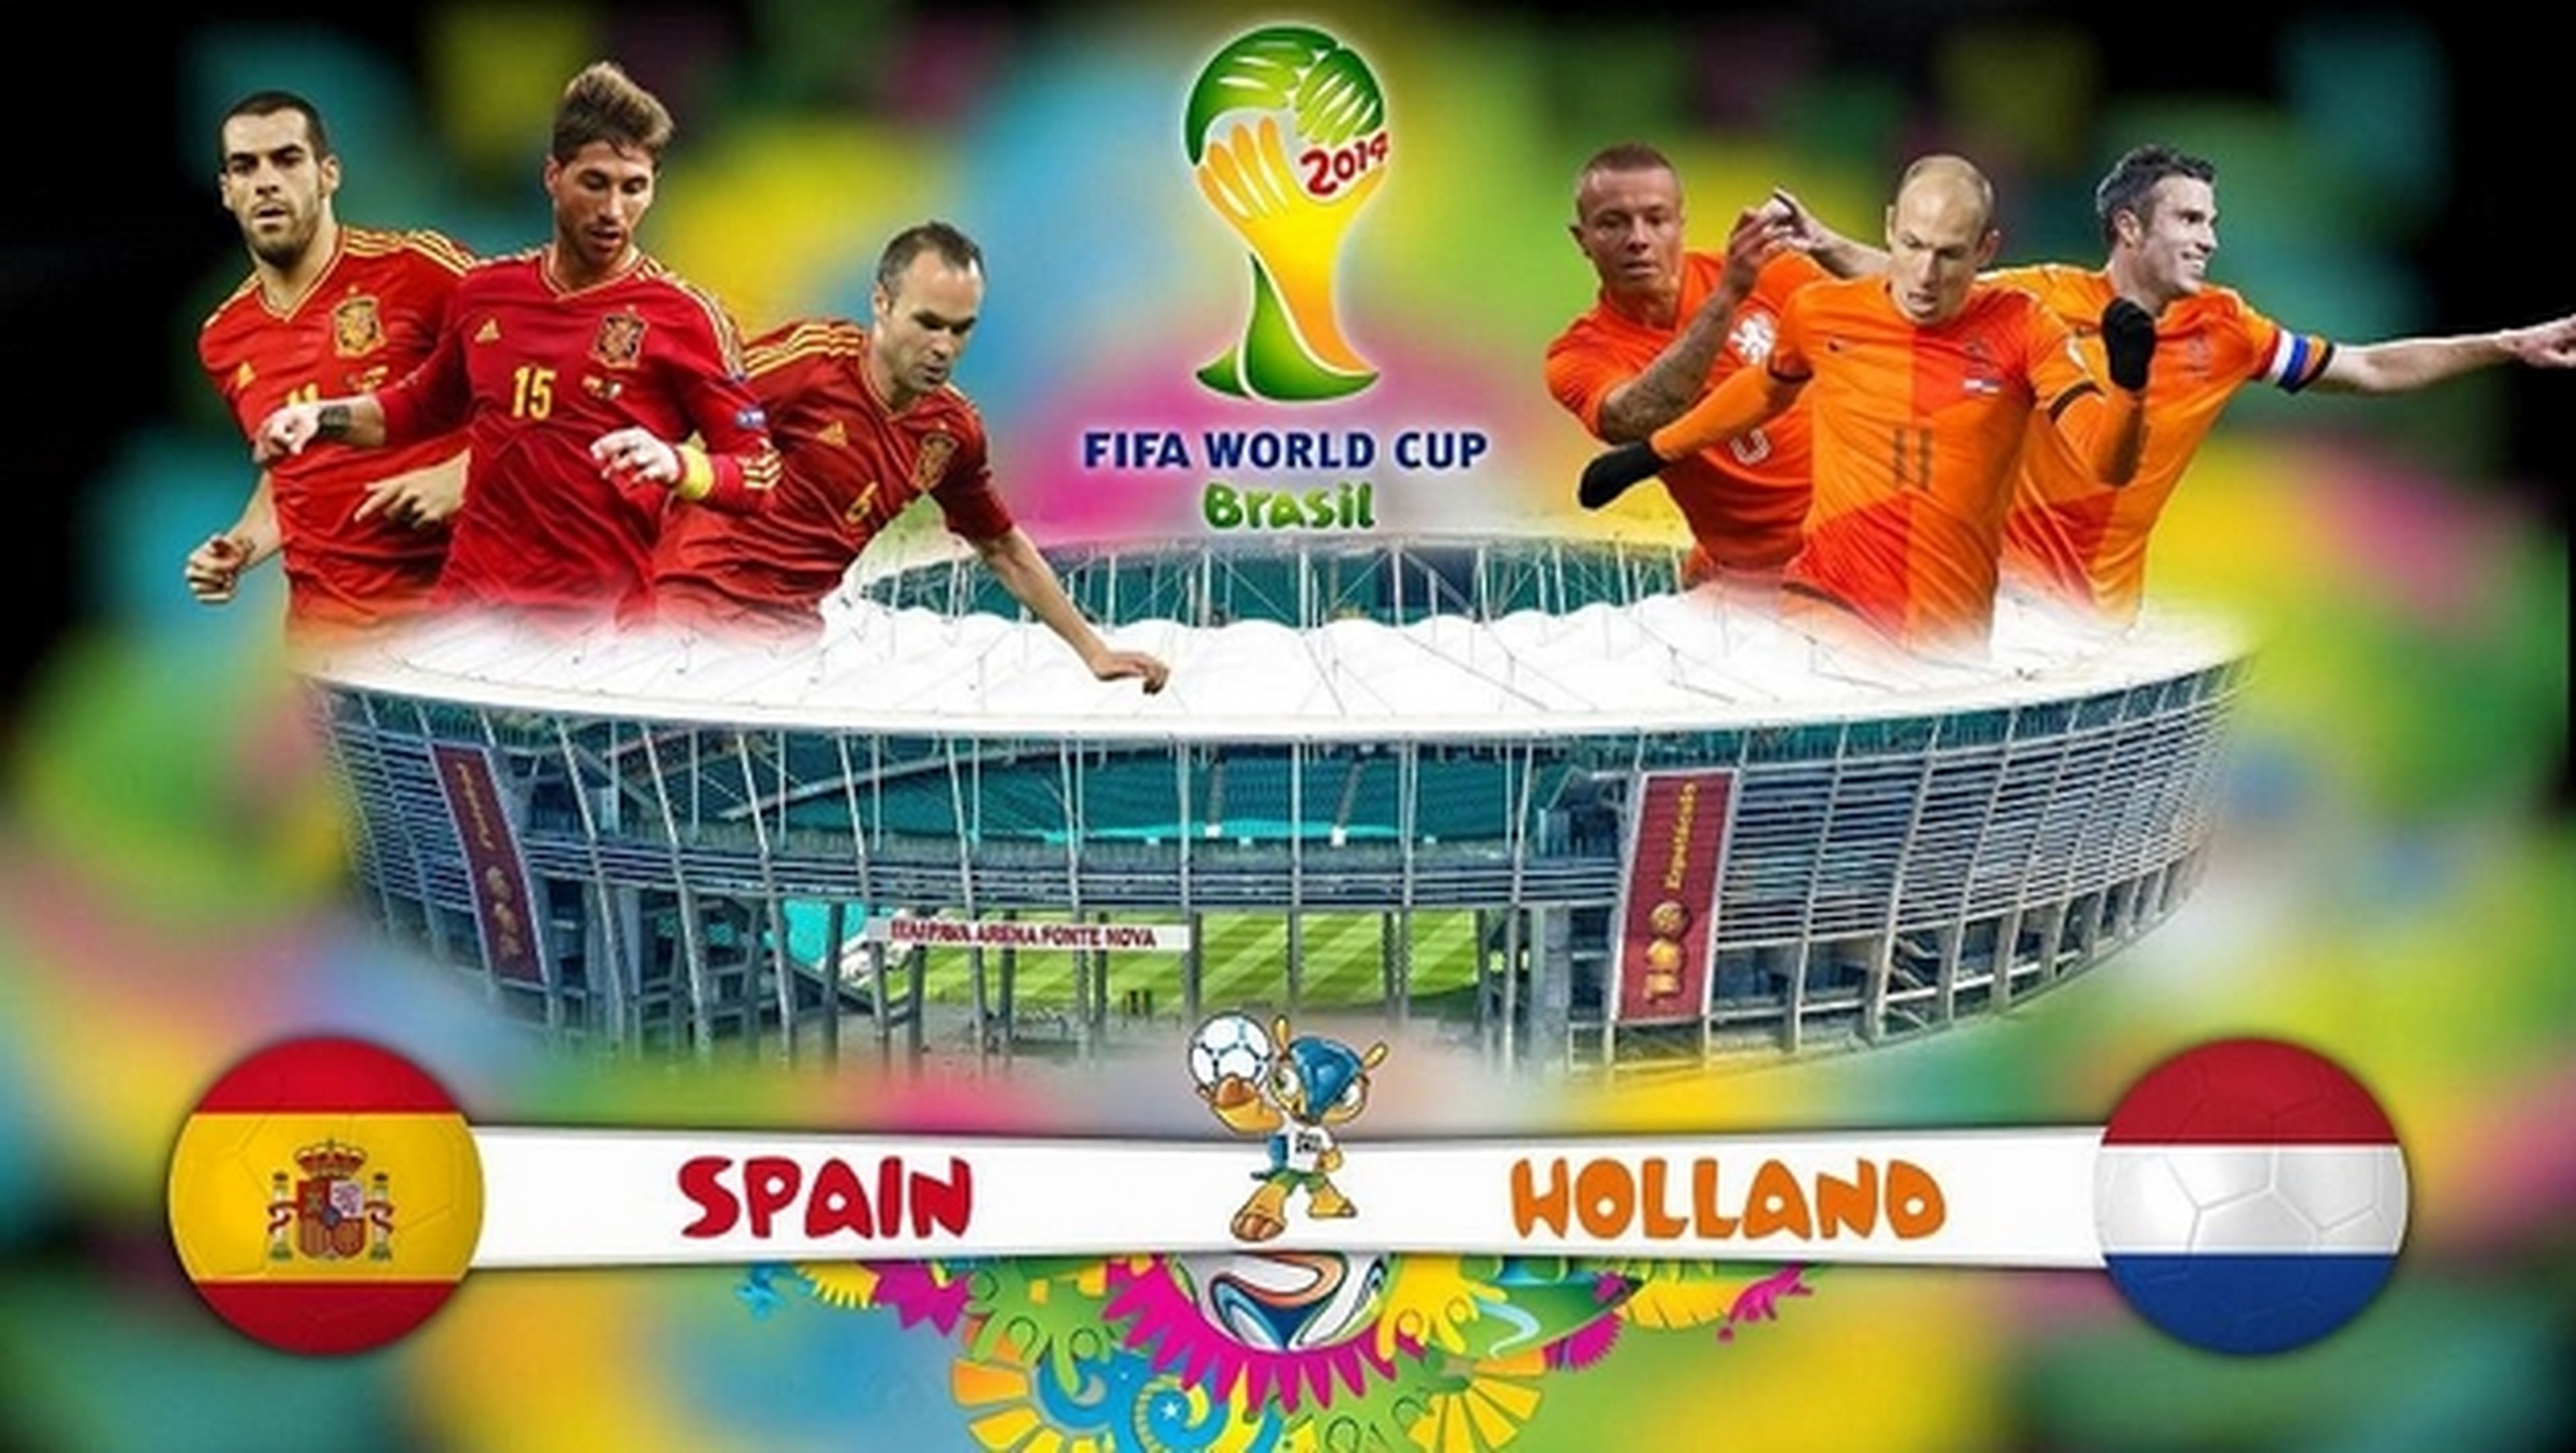 Cómo ver online el partido del Mundial de Fútbol Brasil 2014: España contra Holanda